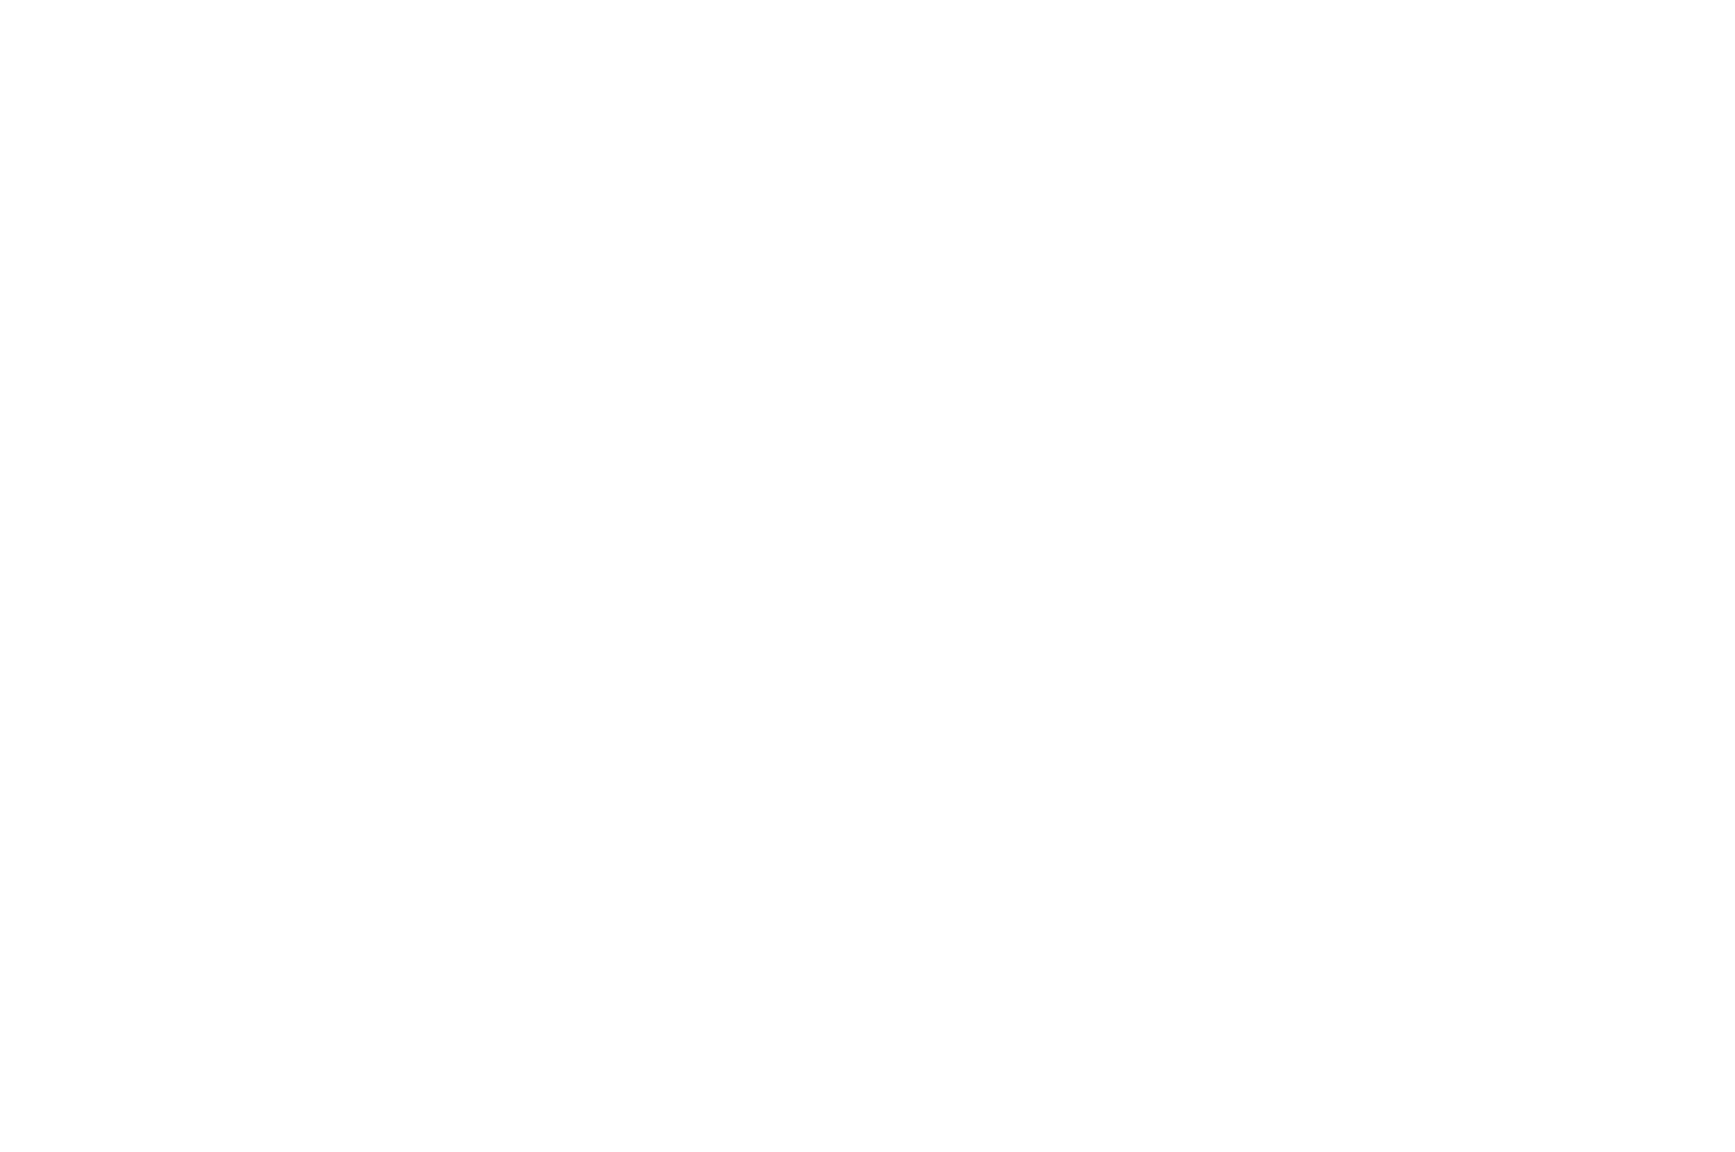 BEST DIRECTOR RUNNER UP - Green Mountain Christian Film Festival - 2020